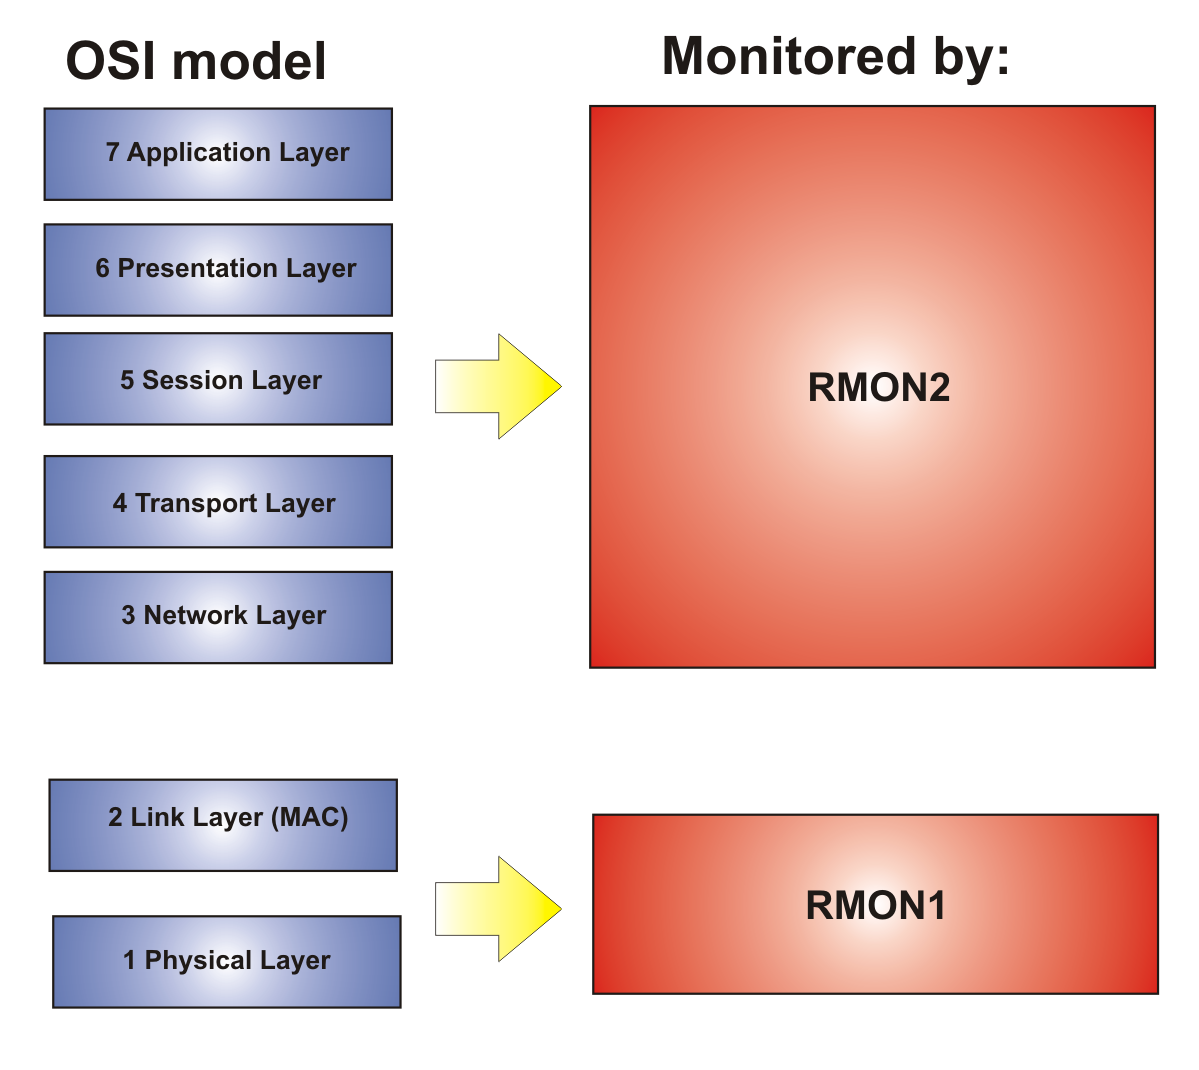 RMON1 can monitor OSI layers 1 and 2. RMON2 can monitor OSI layers 3 through 7.